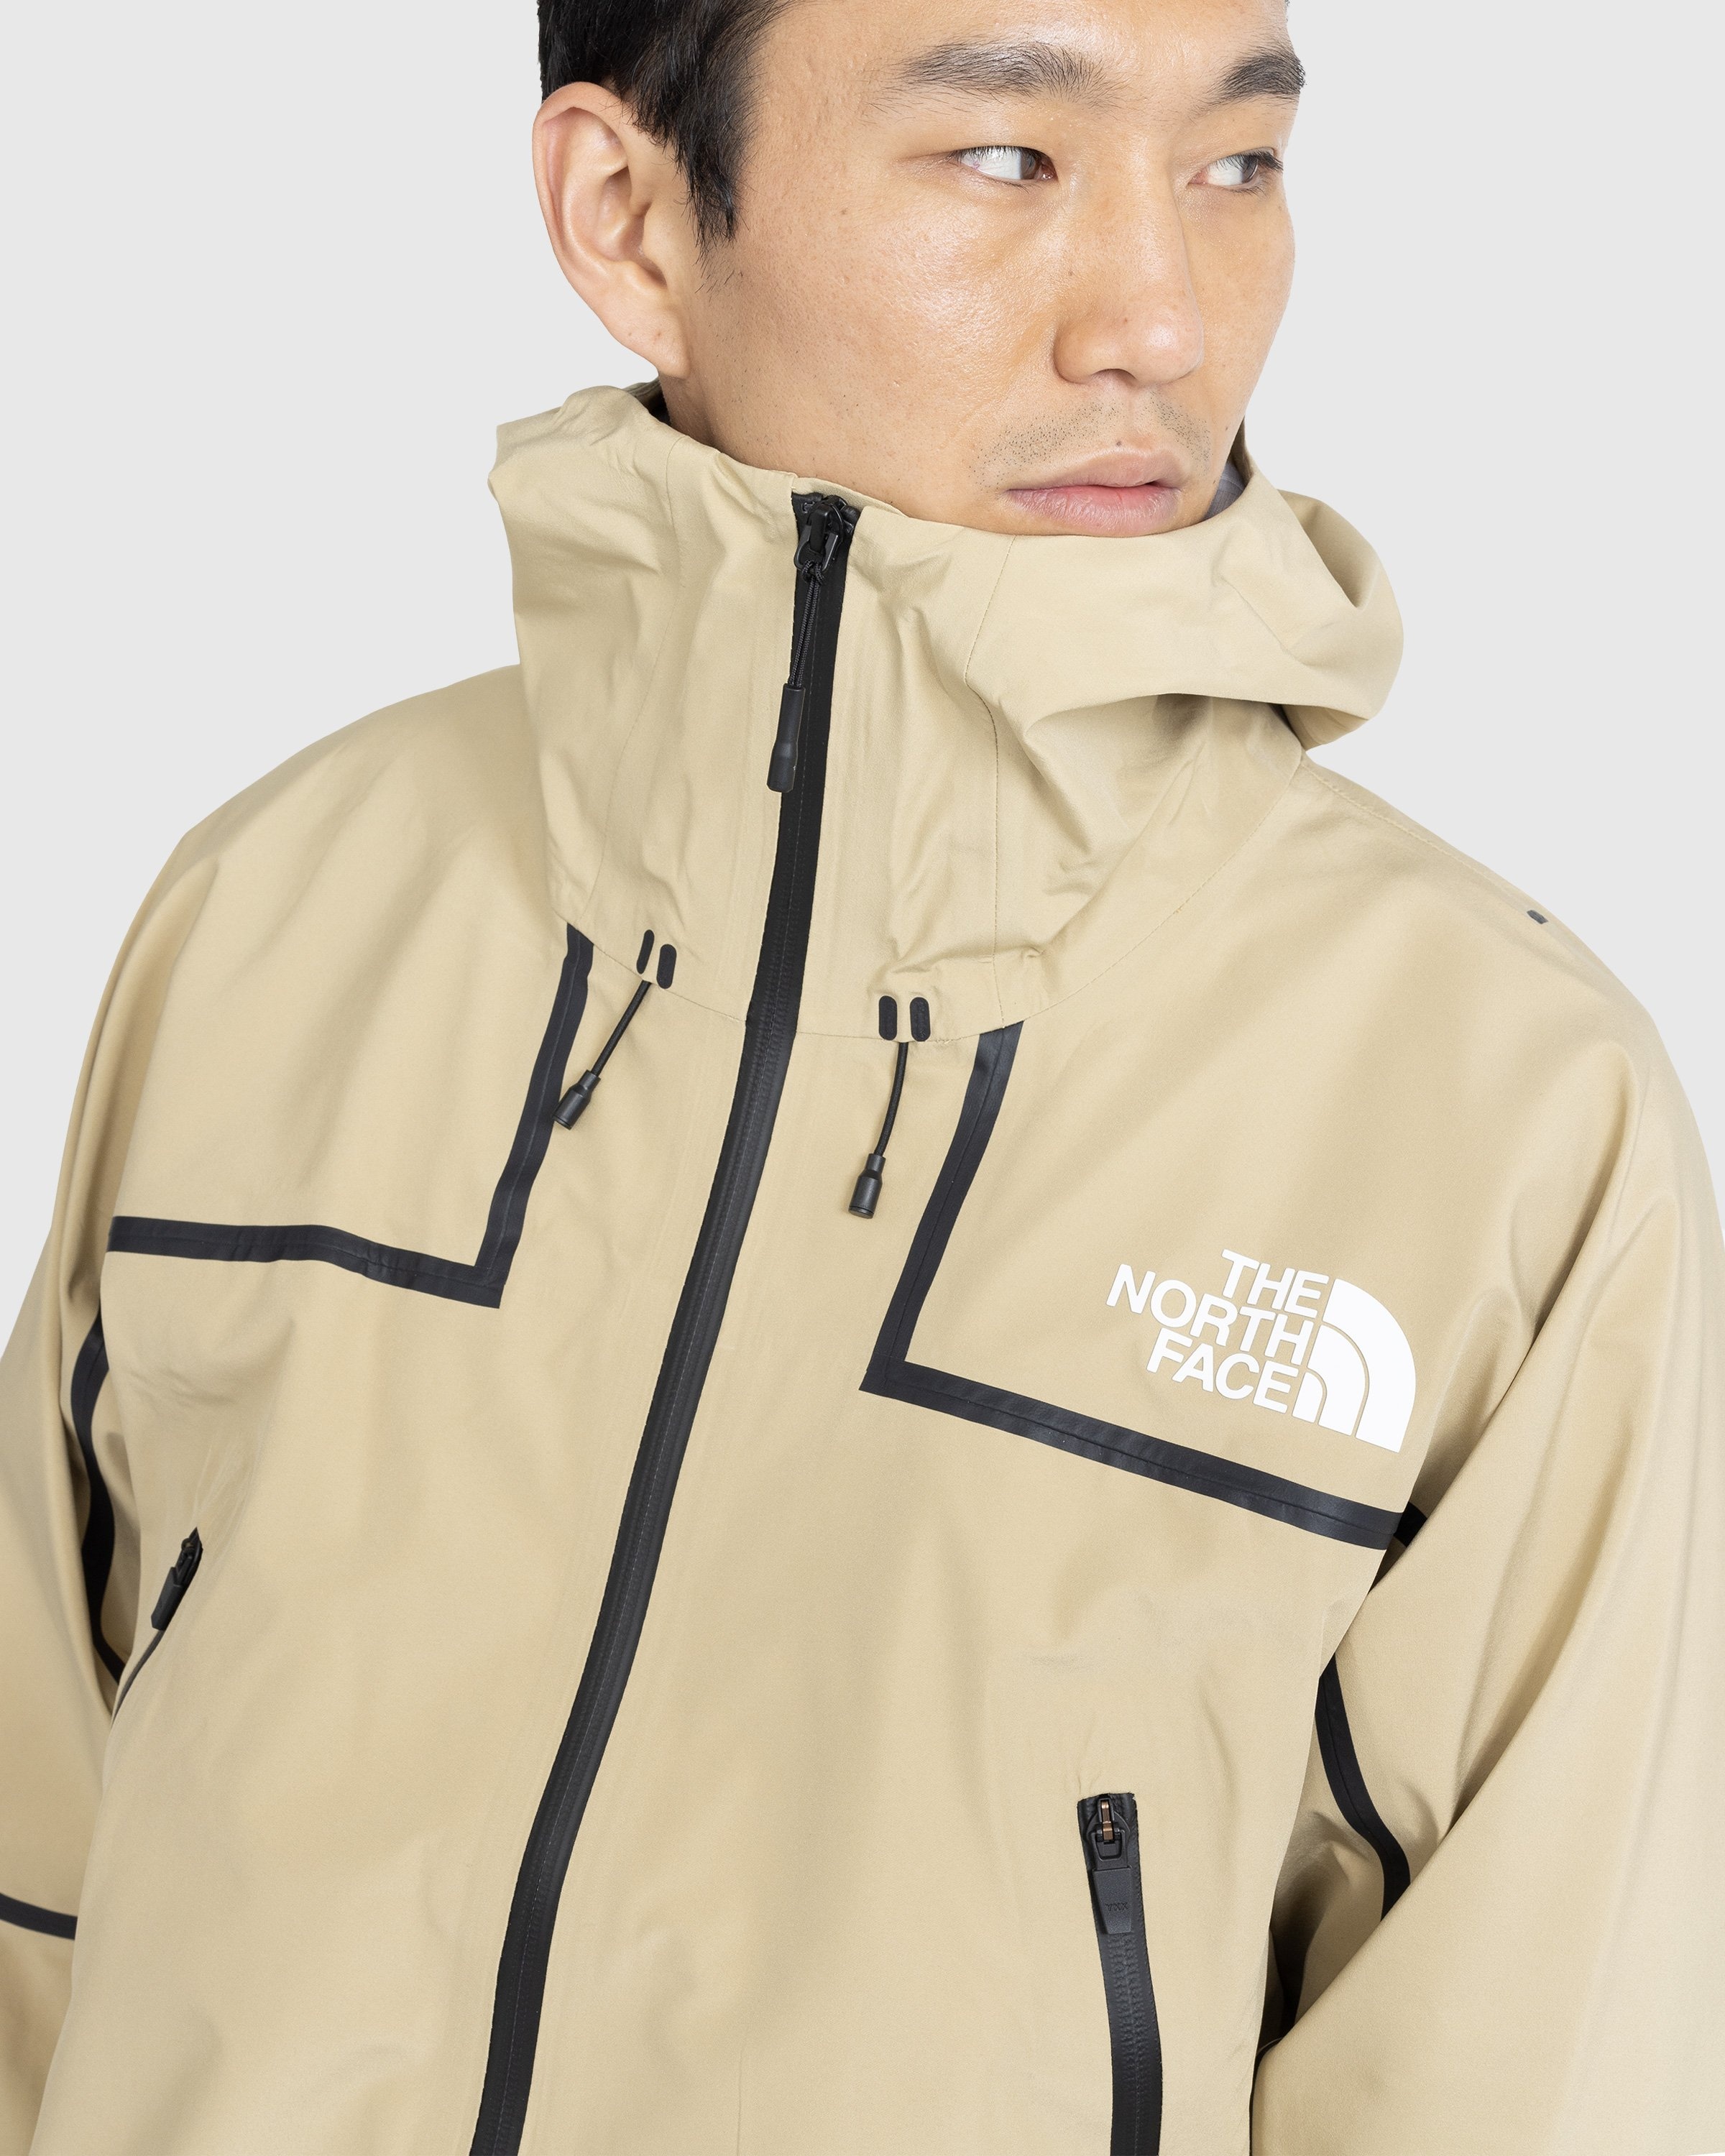 The North Face – Rmst Futurelight Mountain Jacket Khaki Stone - Size XL